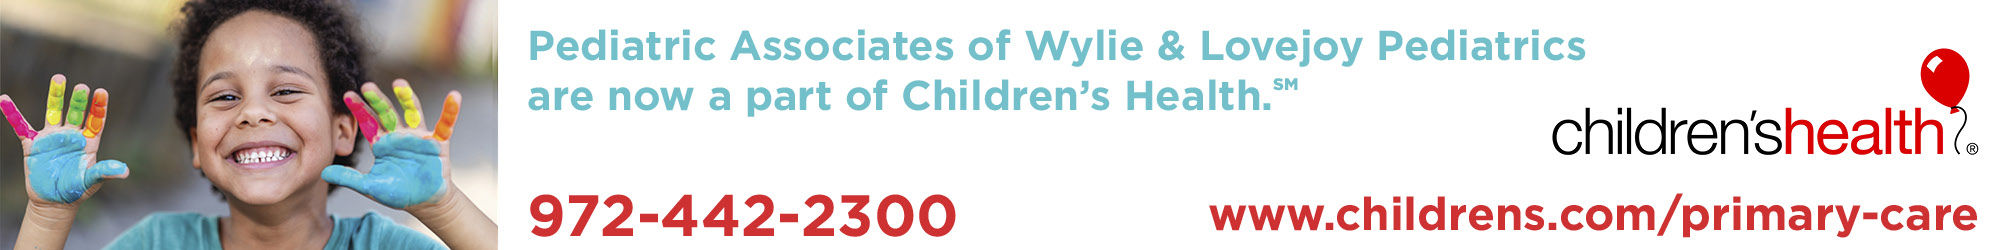 Pediatric Associates of Wylie & Lovejoy Pediatrics